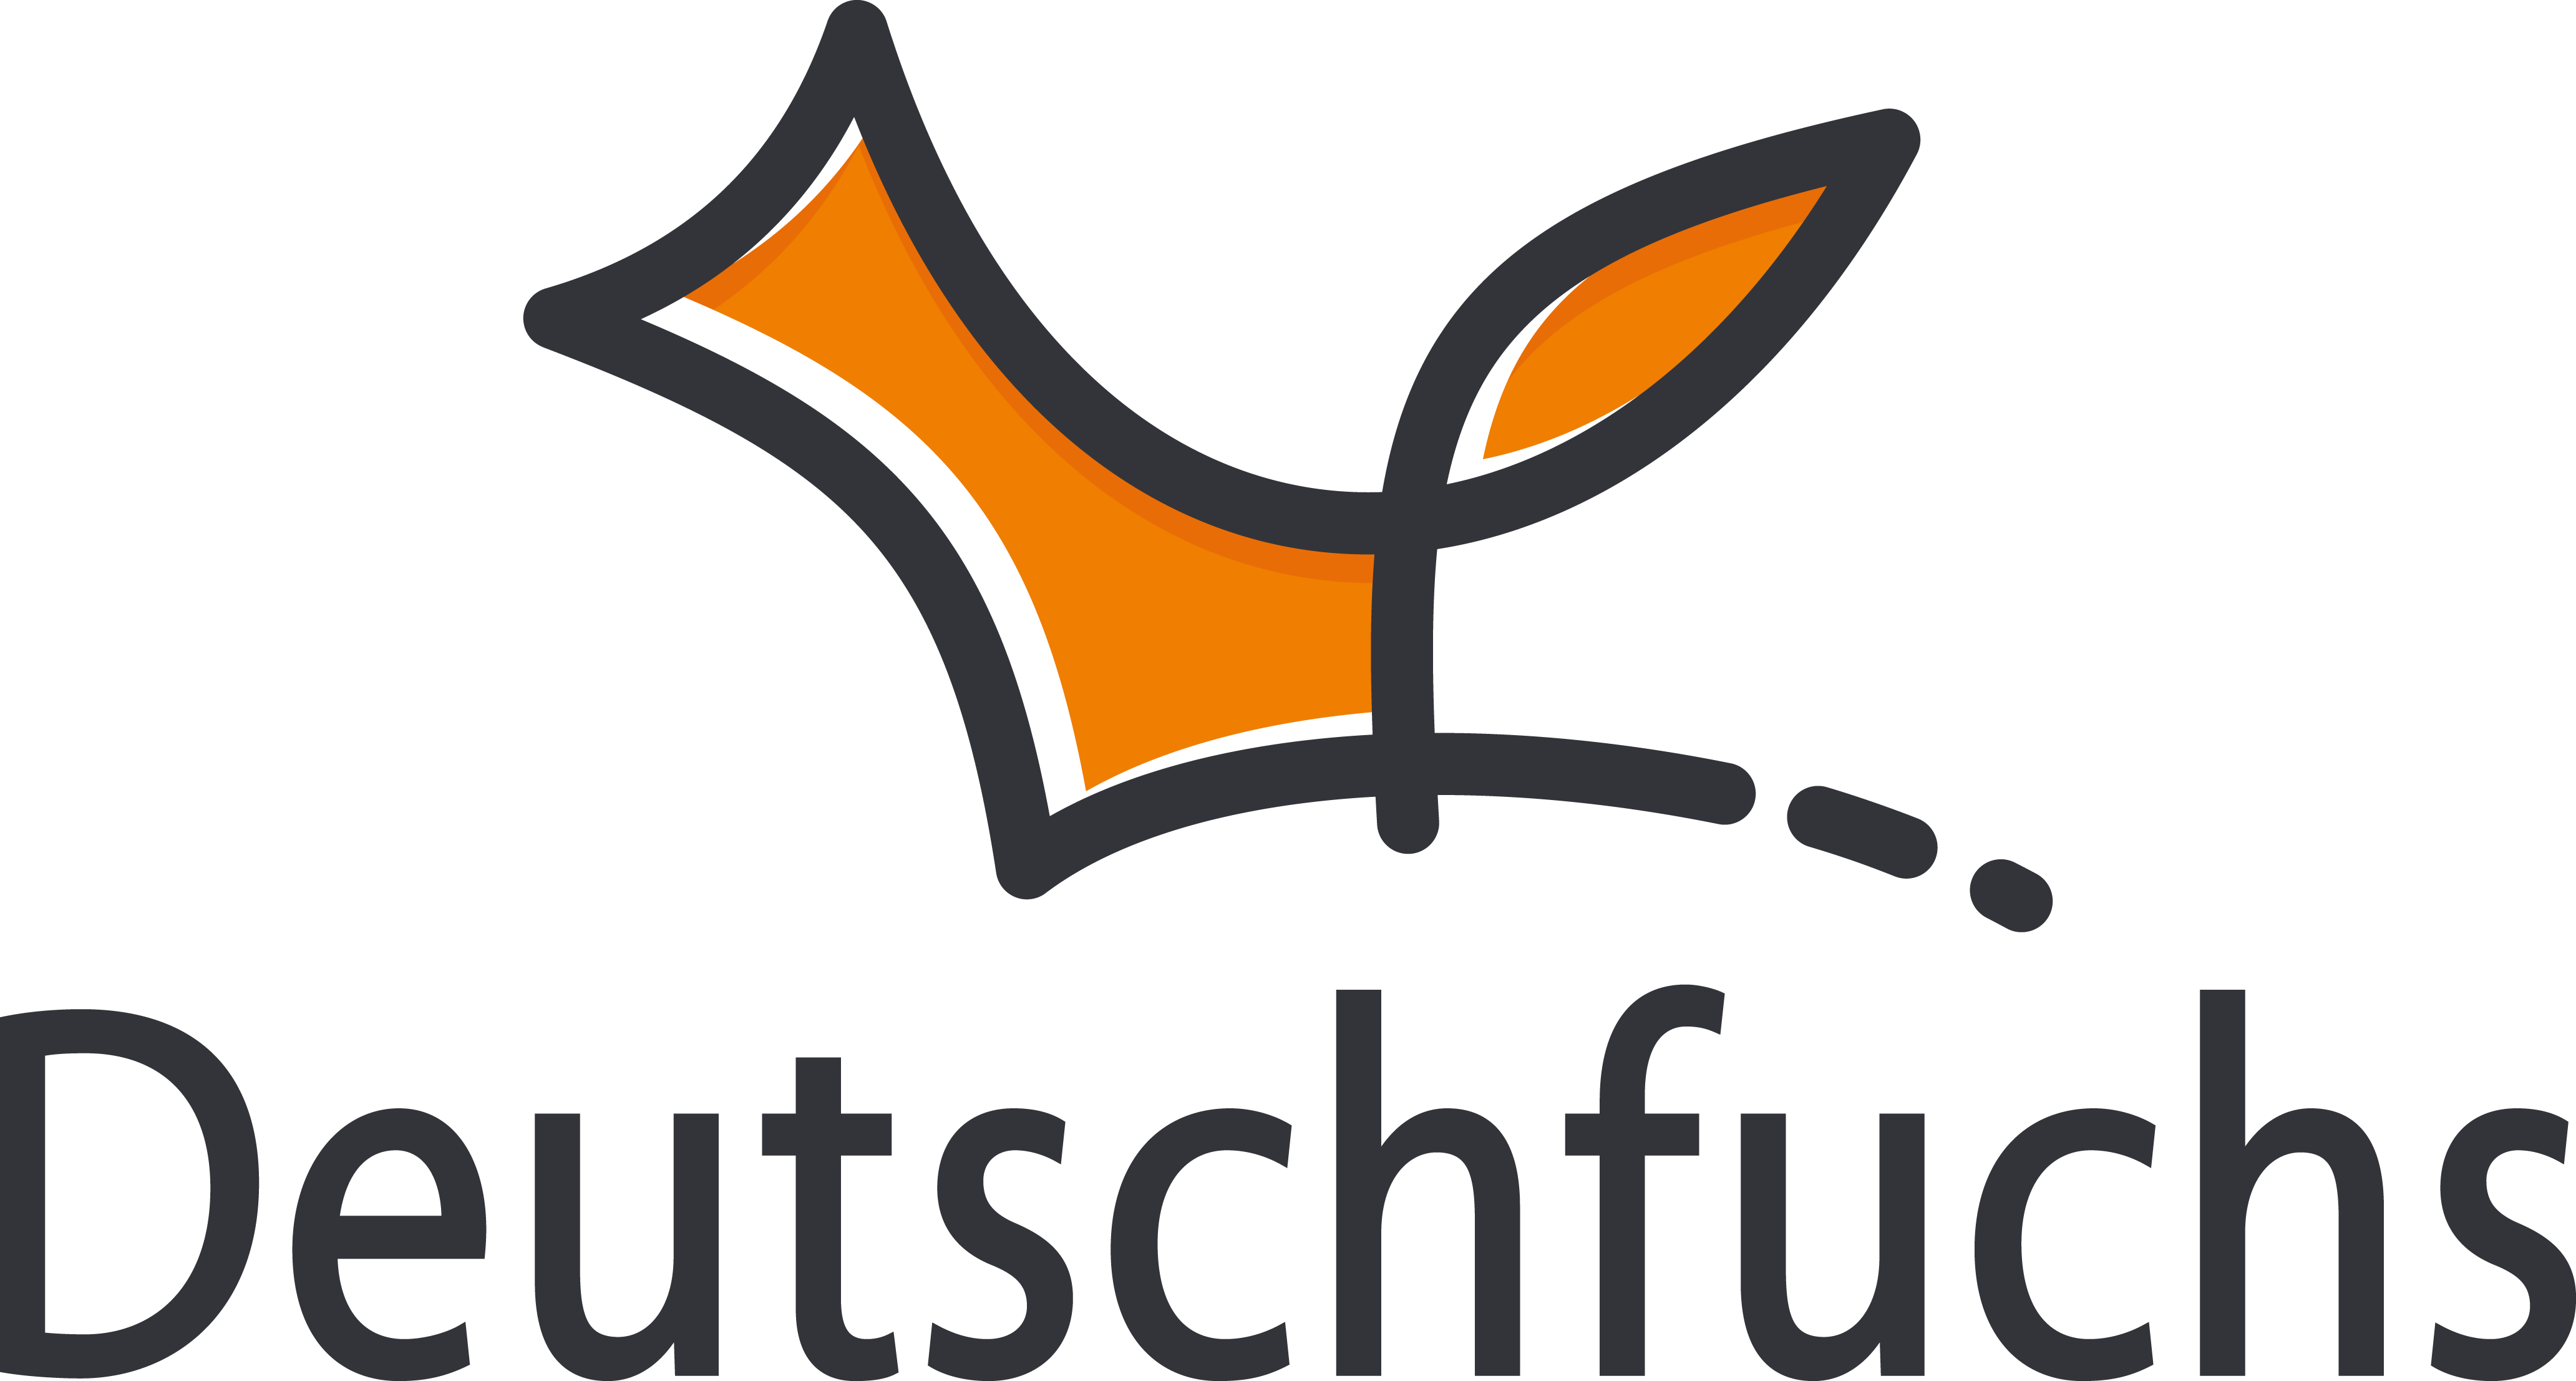 Logo Deutschfuchs